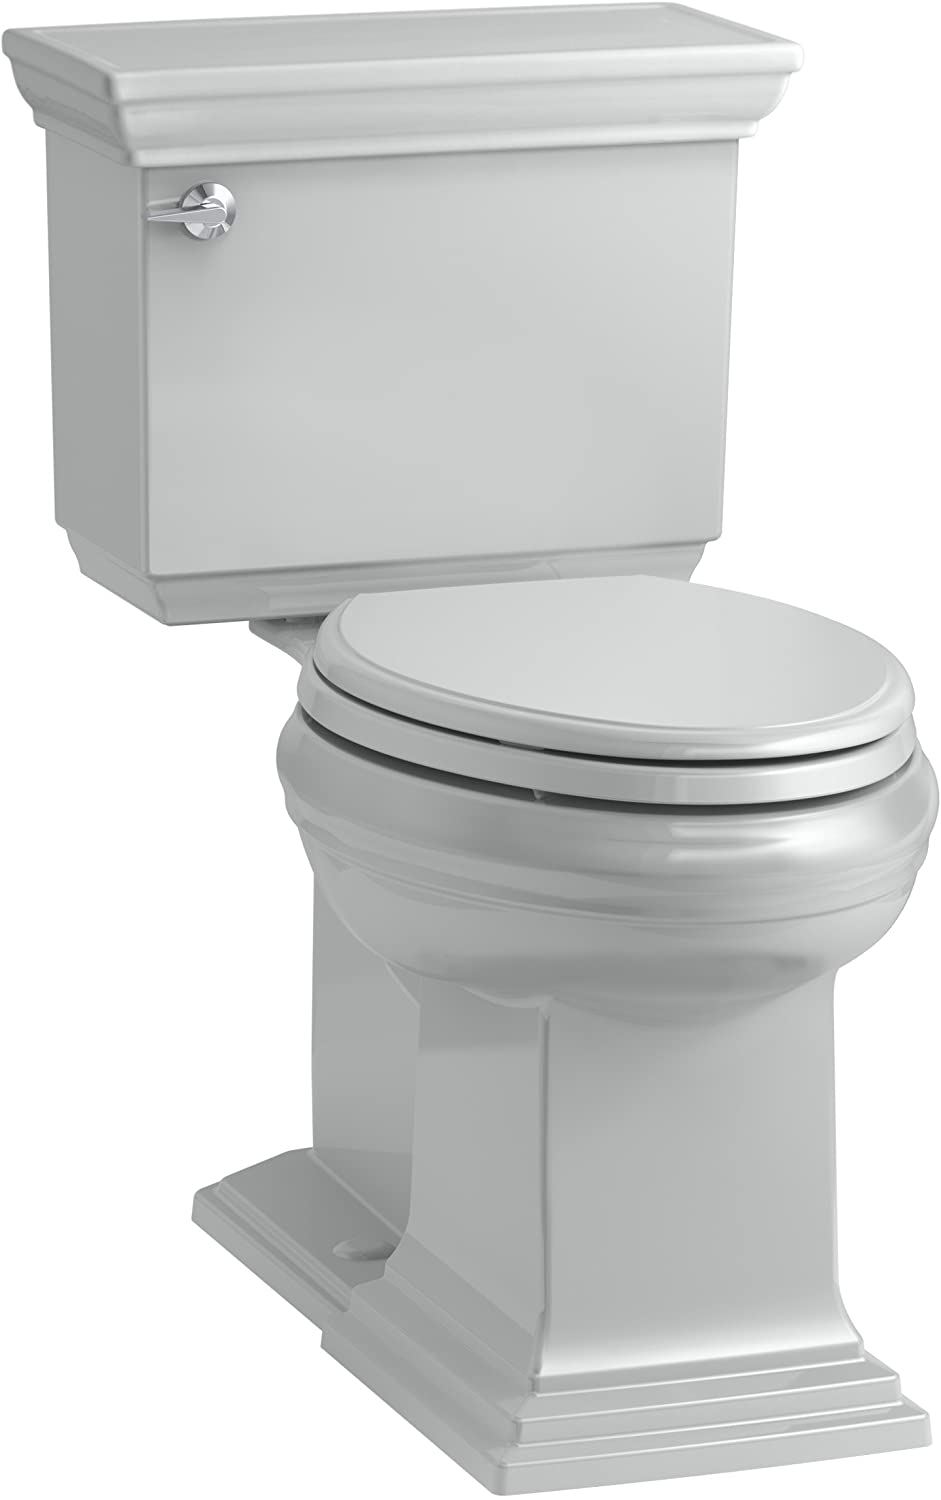 KOHLER K-6669-0 Memoirs Stately Comfort Height Elongated Toilet